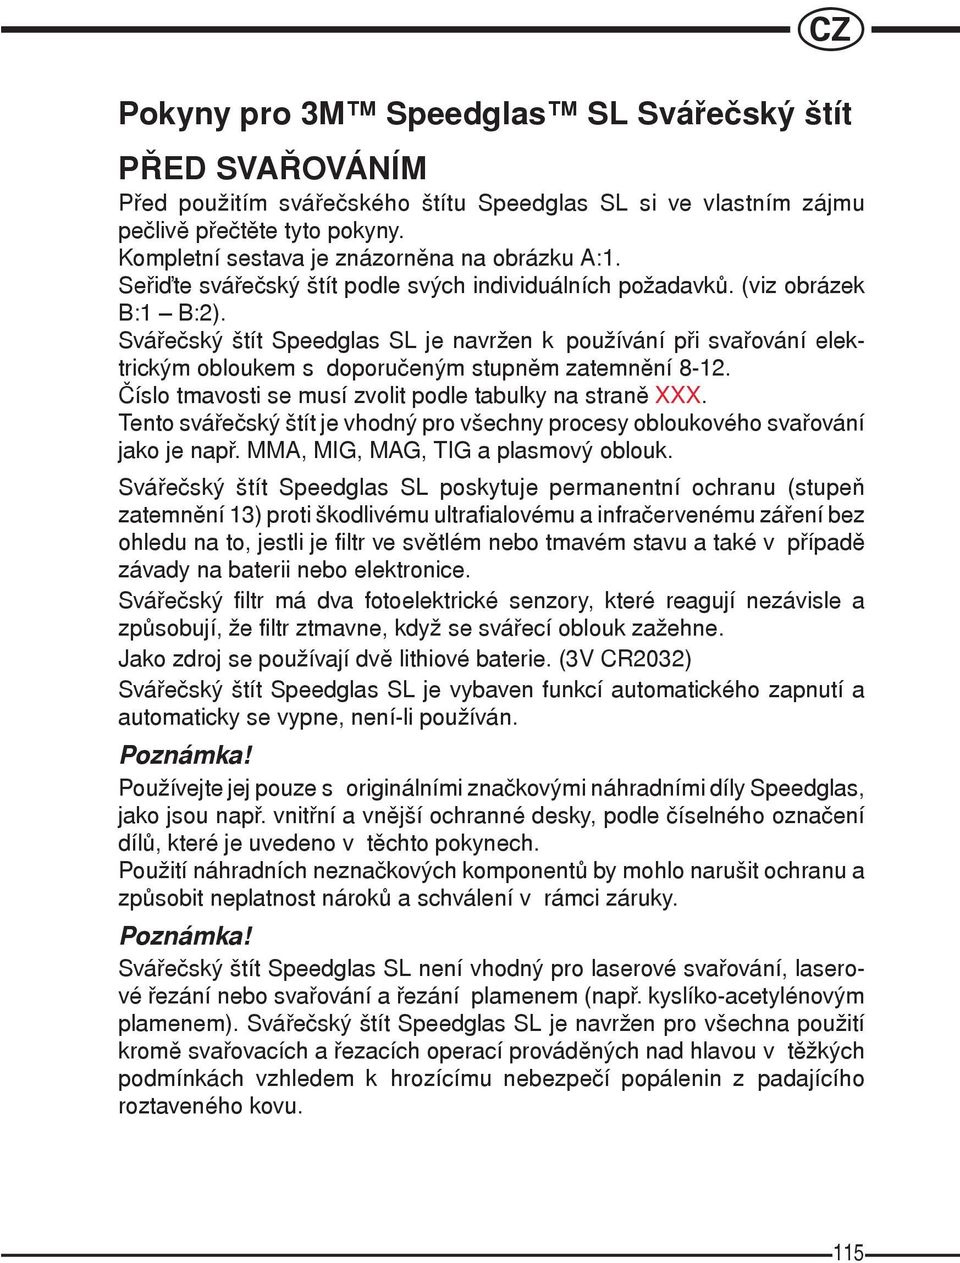 Sváøeèský štít Speedglas SL je navržen k používání pøi svaøování elektrickým obloukem s doporuèeným stupnìm zatemnìní 8-12. Èíslo tmavosti se musí zvolit podle tabulky na stranì XXX.